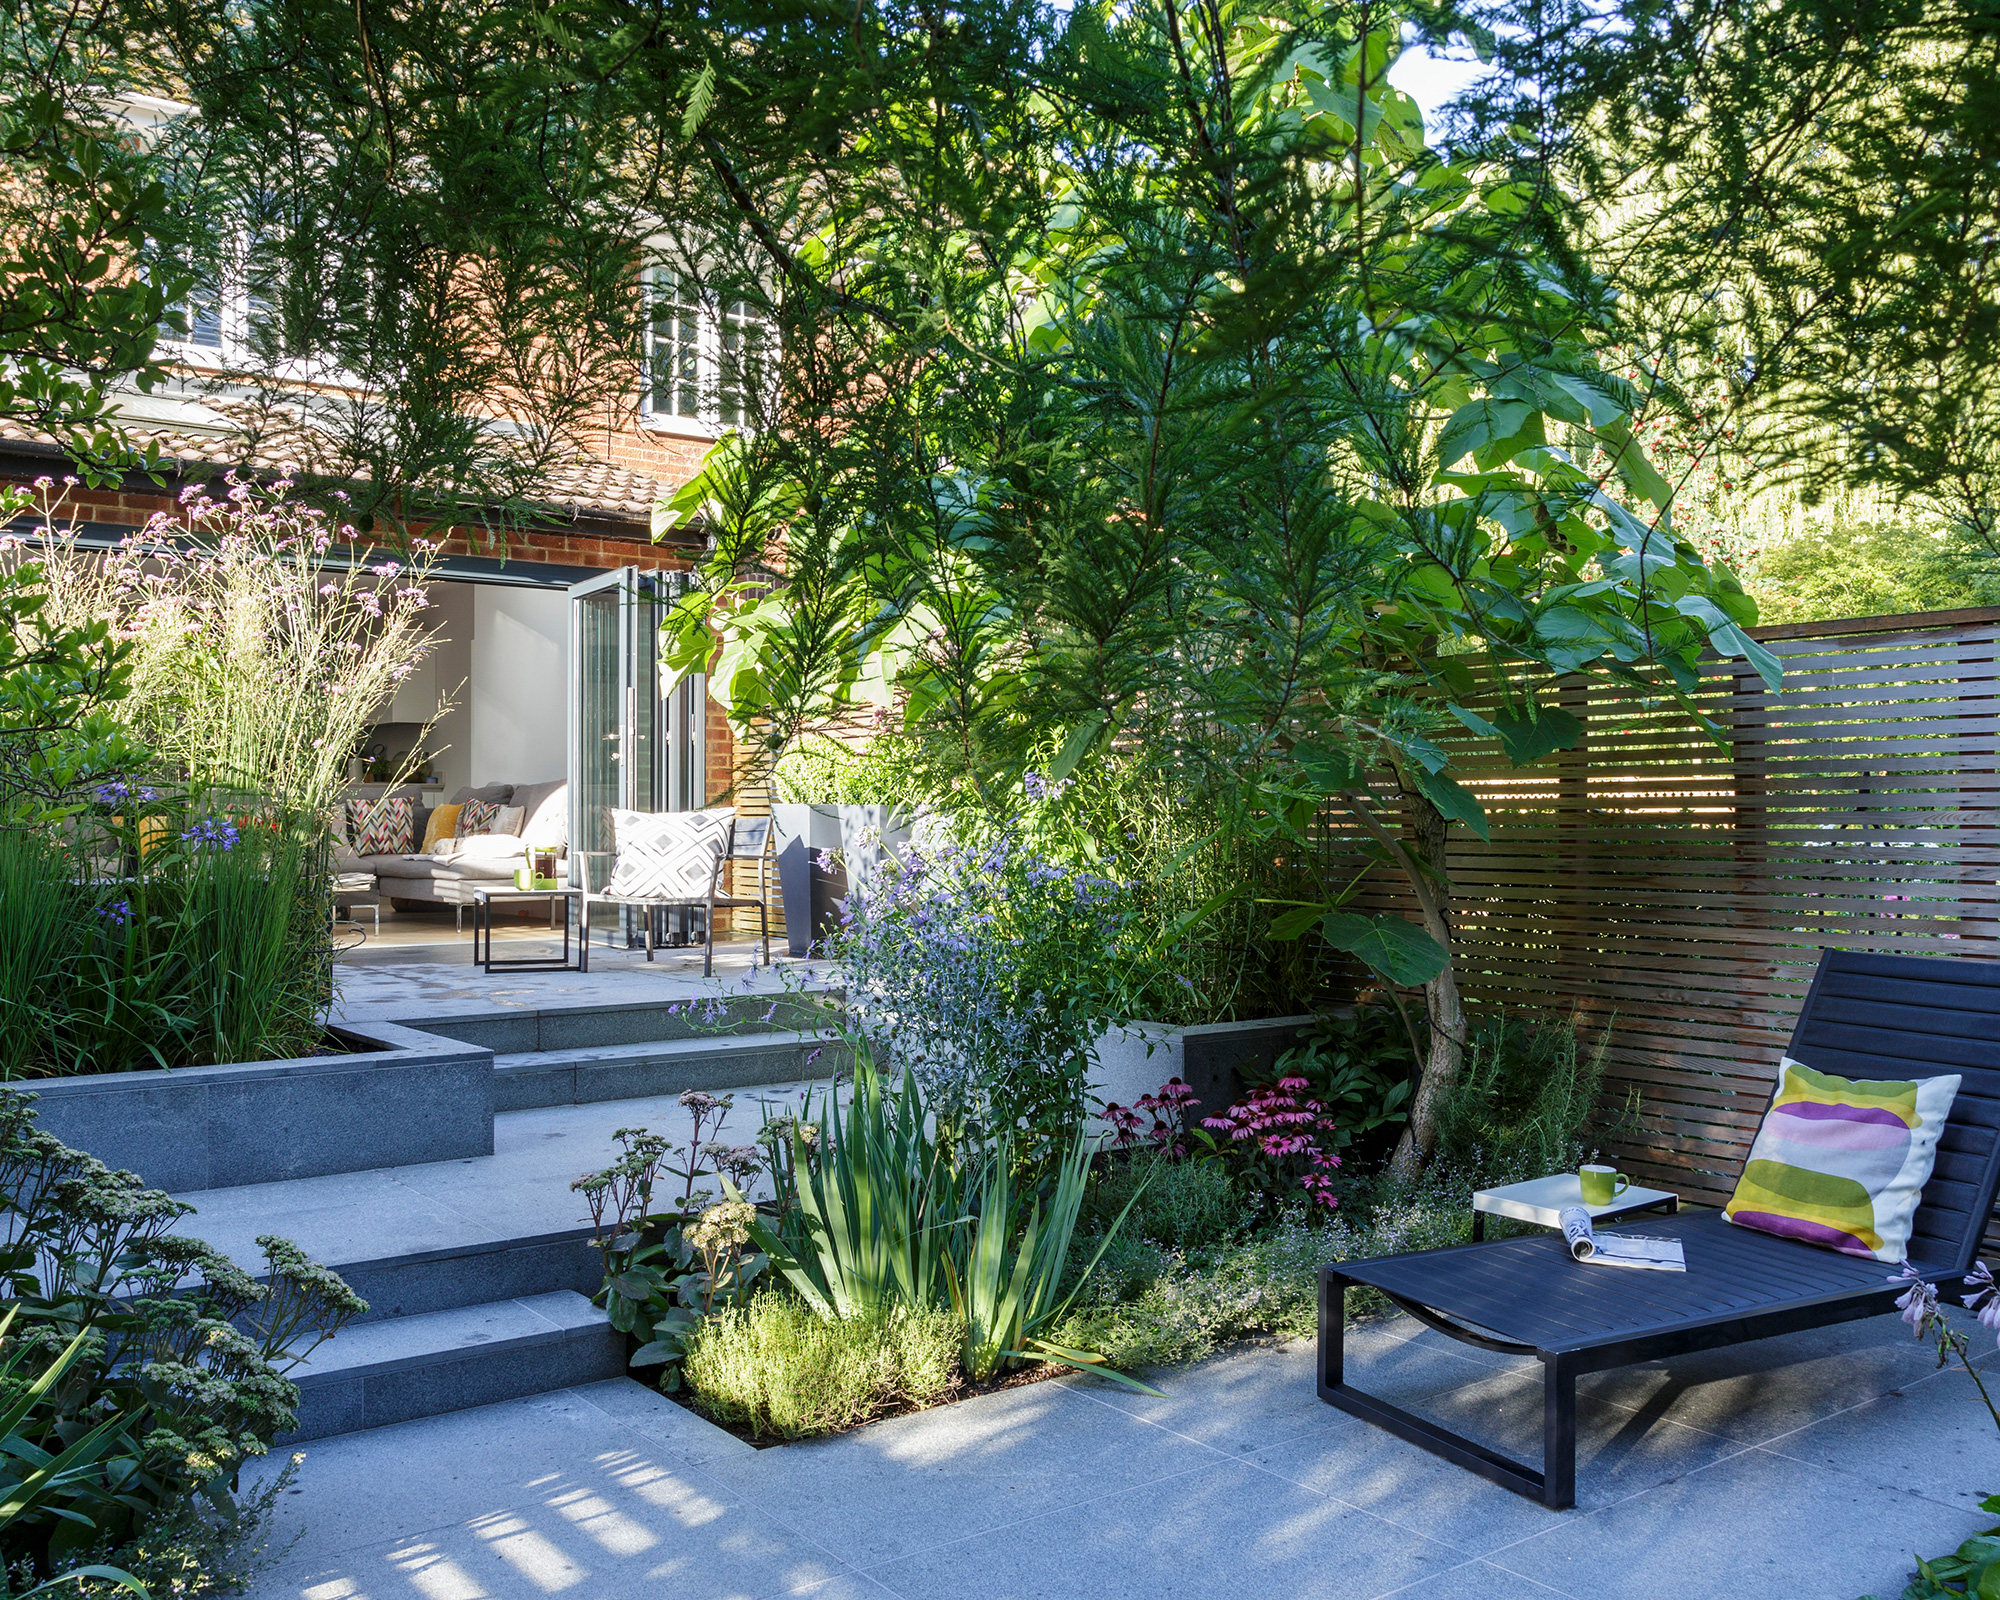 How To Plan A Small Garden Make The, How To Design A Small Patio Garden